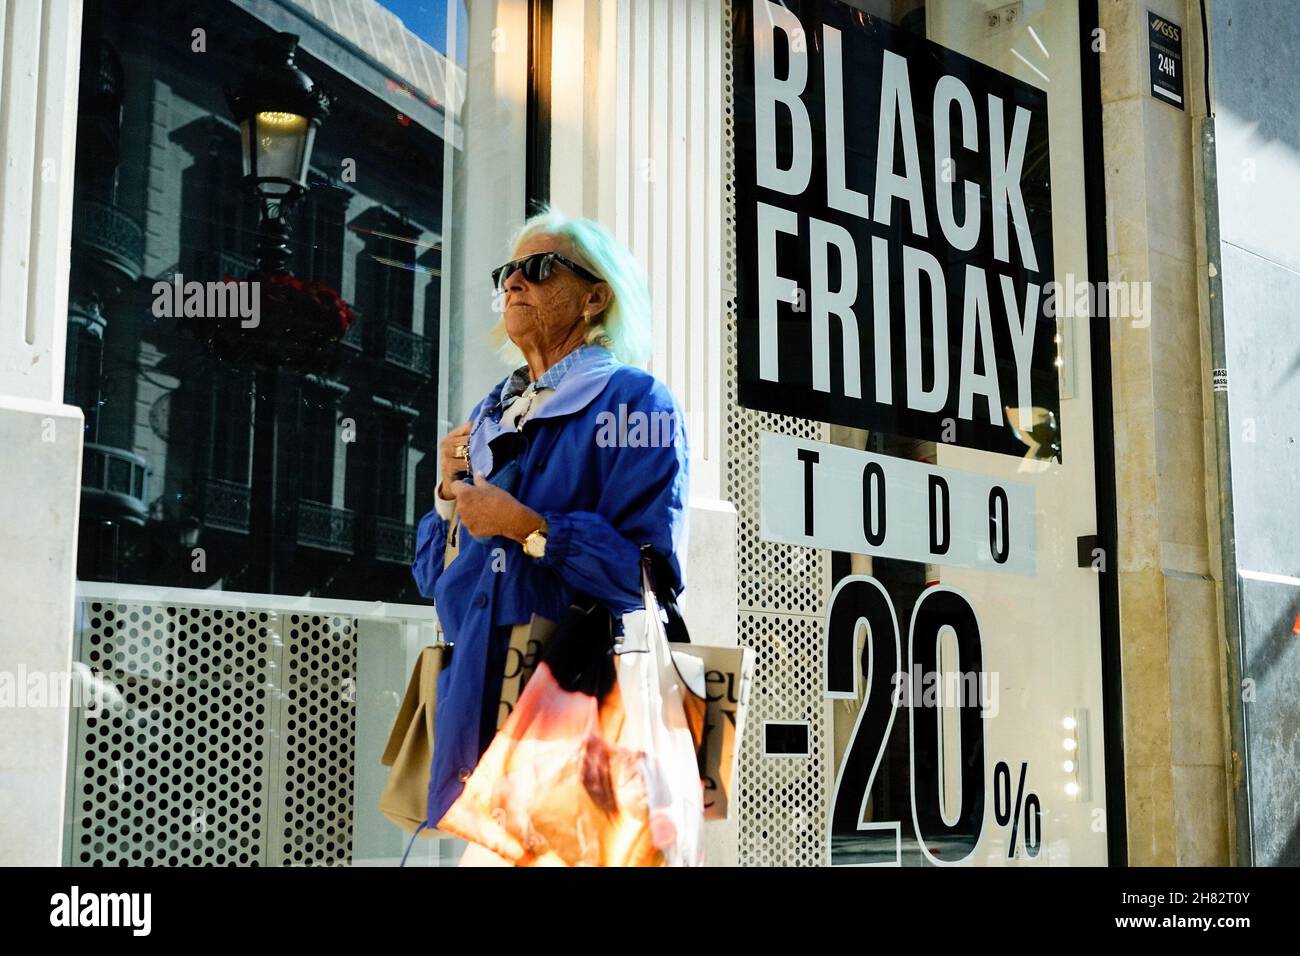 تقييم قطري الخرقاء bershka online shop black friday - stoprestremember.com